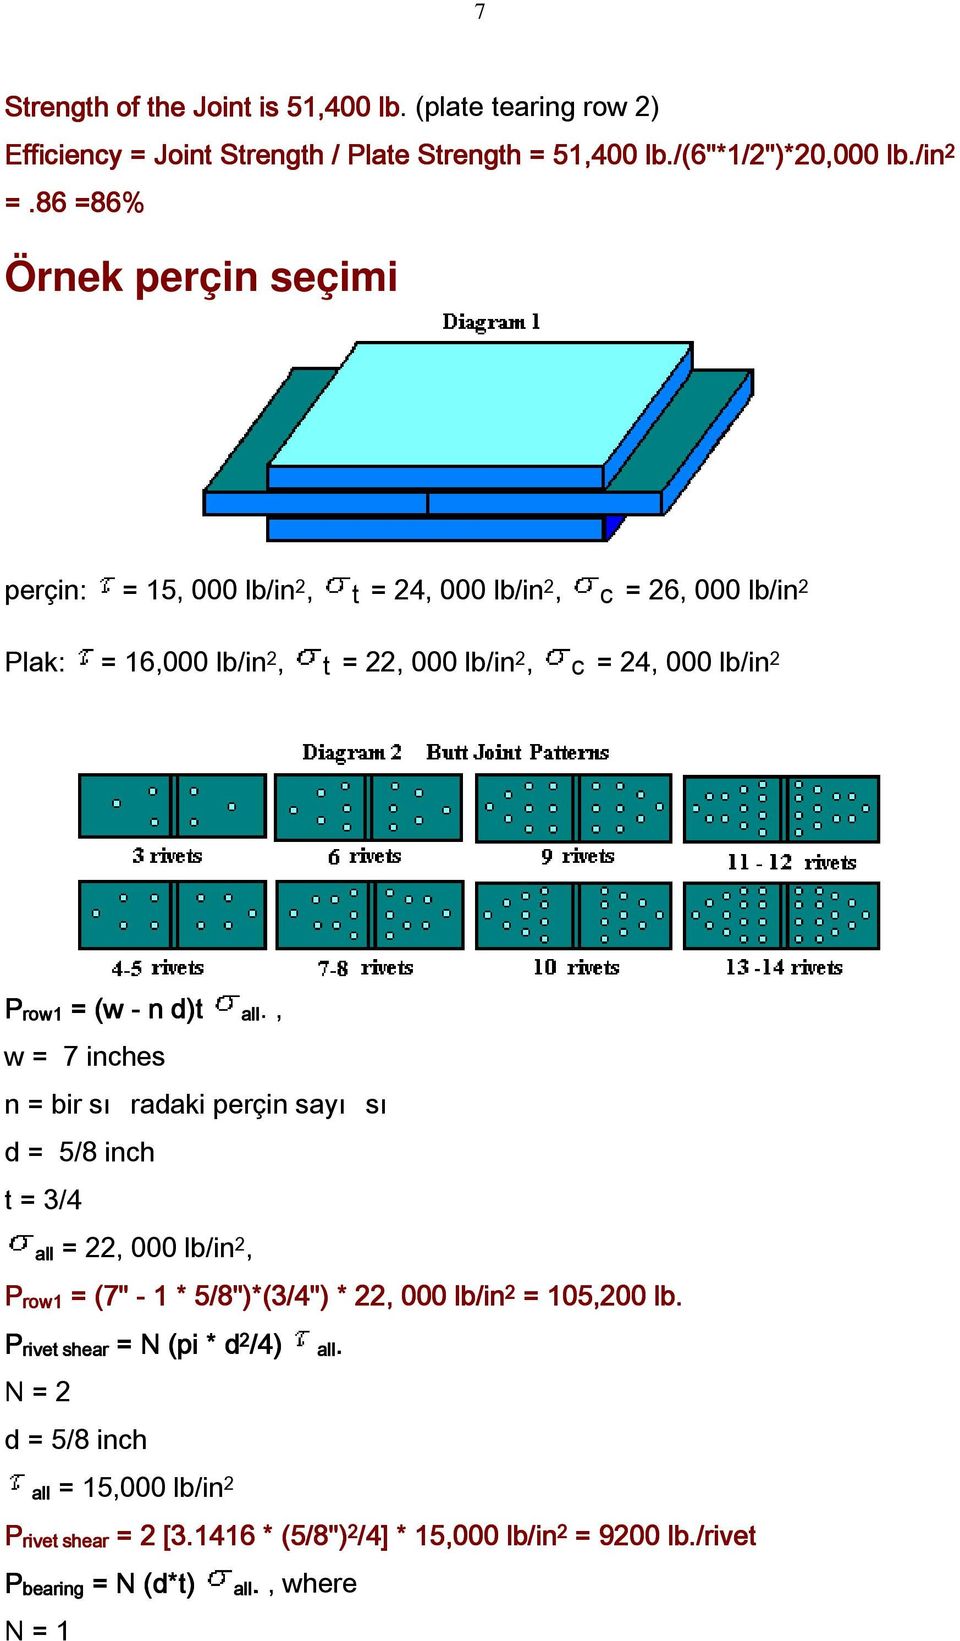 (w - n d)t., w = 7 inches n = bir sı radaki perçin sayı sı d = 5/8 inch t = 3/4 = 22, 000 lb/in 2, row1 = (7" - 1 * 5/8")*(3/4") * 22, 000 lb/in 2 = 105,200 lb.